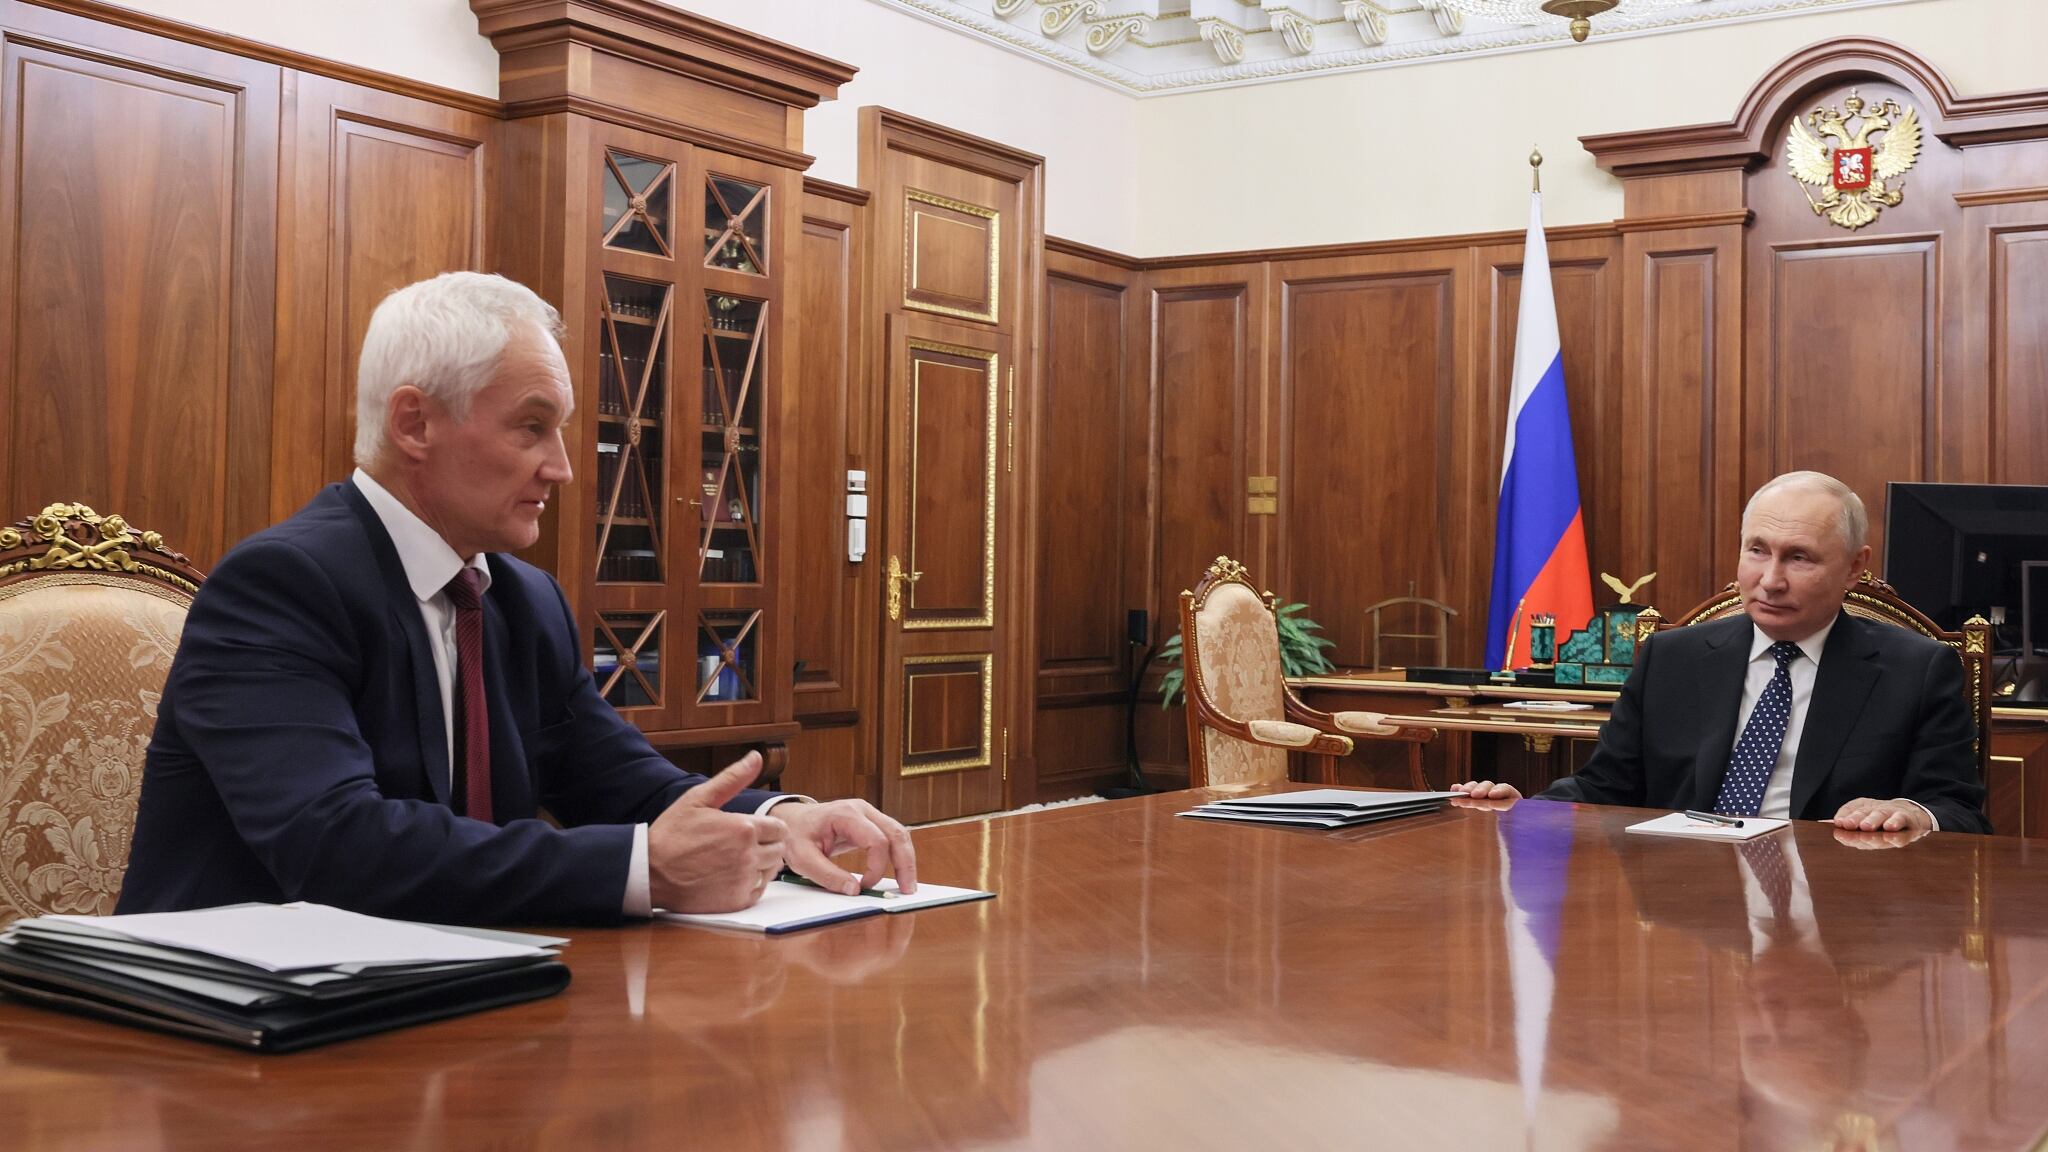 El presidente ruso, Vladimir Putin (a la derecha) escucha al nuevo ministro de defensa Andrey Belousov durante una reunión en el Kremlin en Moscú, Rusia. Foto: CFP